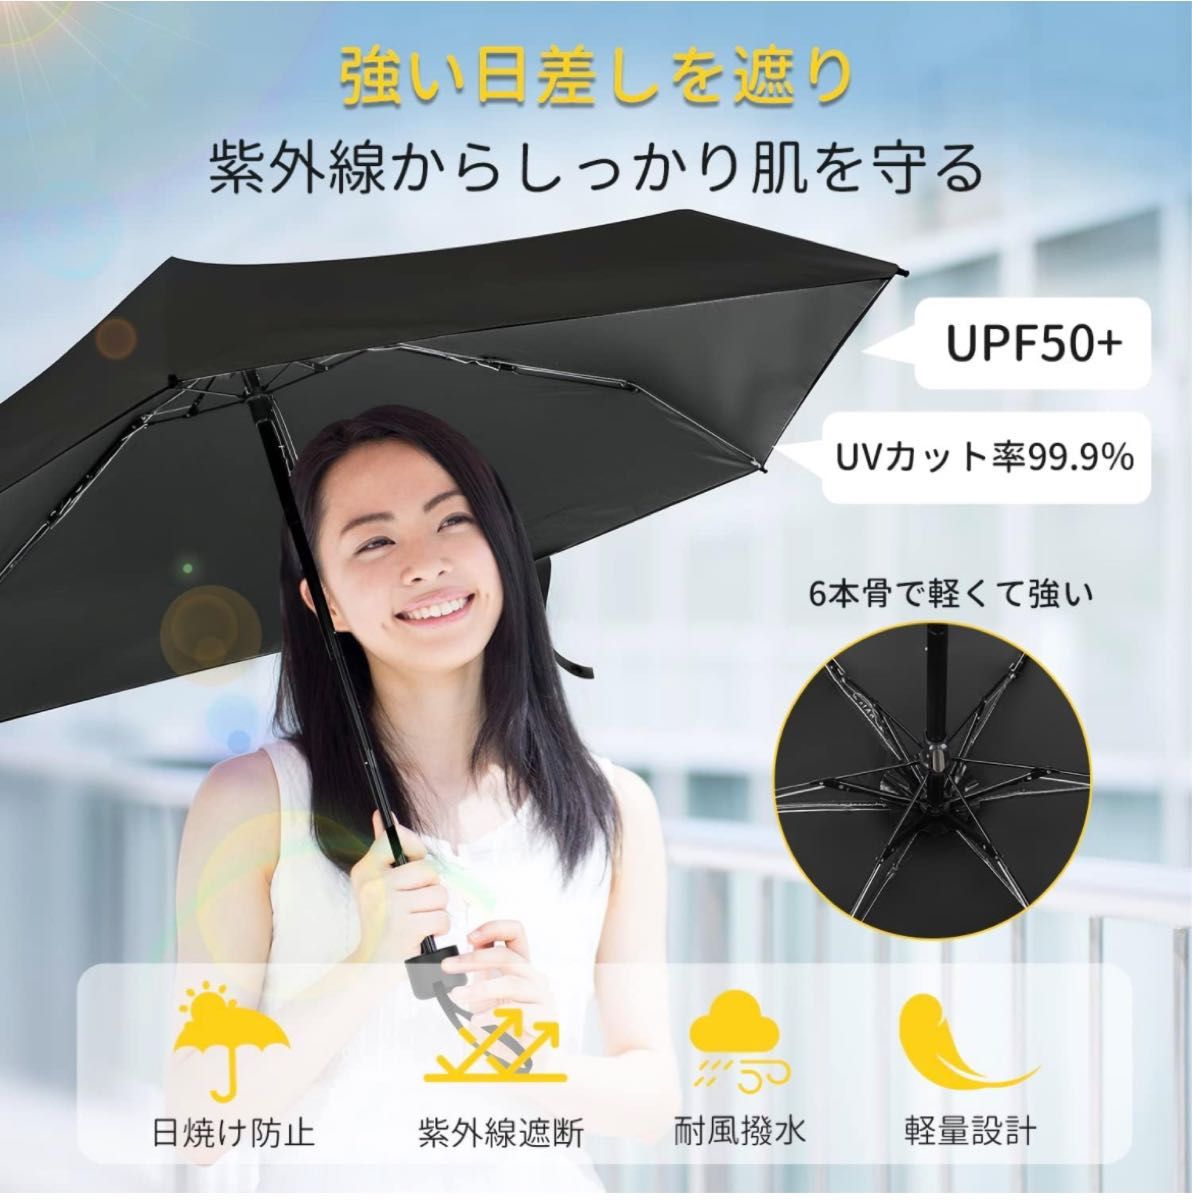 【新品】日傘 折りたたみ傘 UVカット 遮光 遮熱 晴雨兼用 超軽量 コンパクト 紫外線遮断 日焼け防止 耐風撥水 梅雨対策 携帯